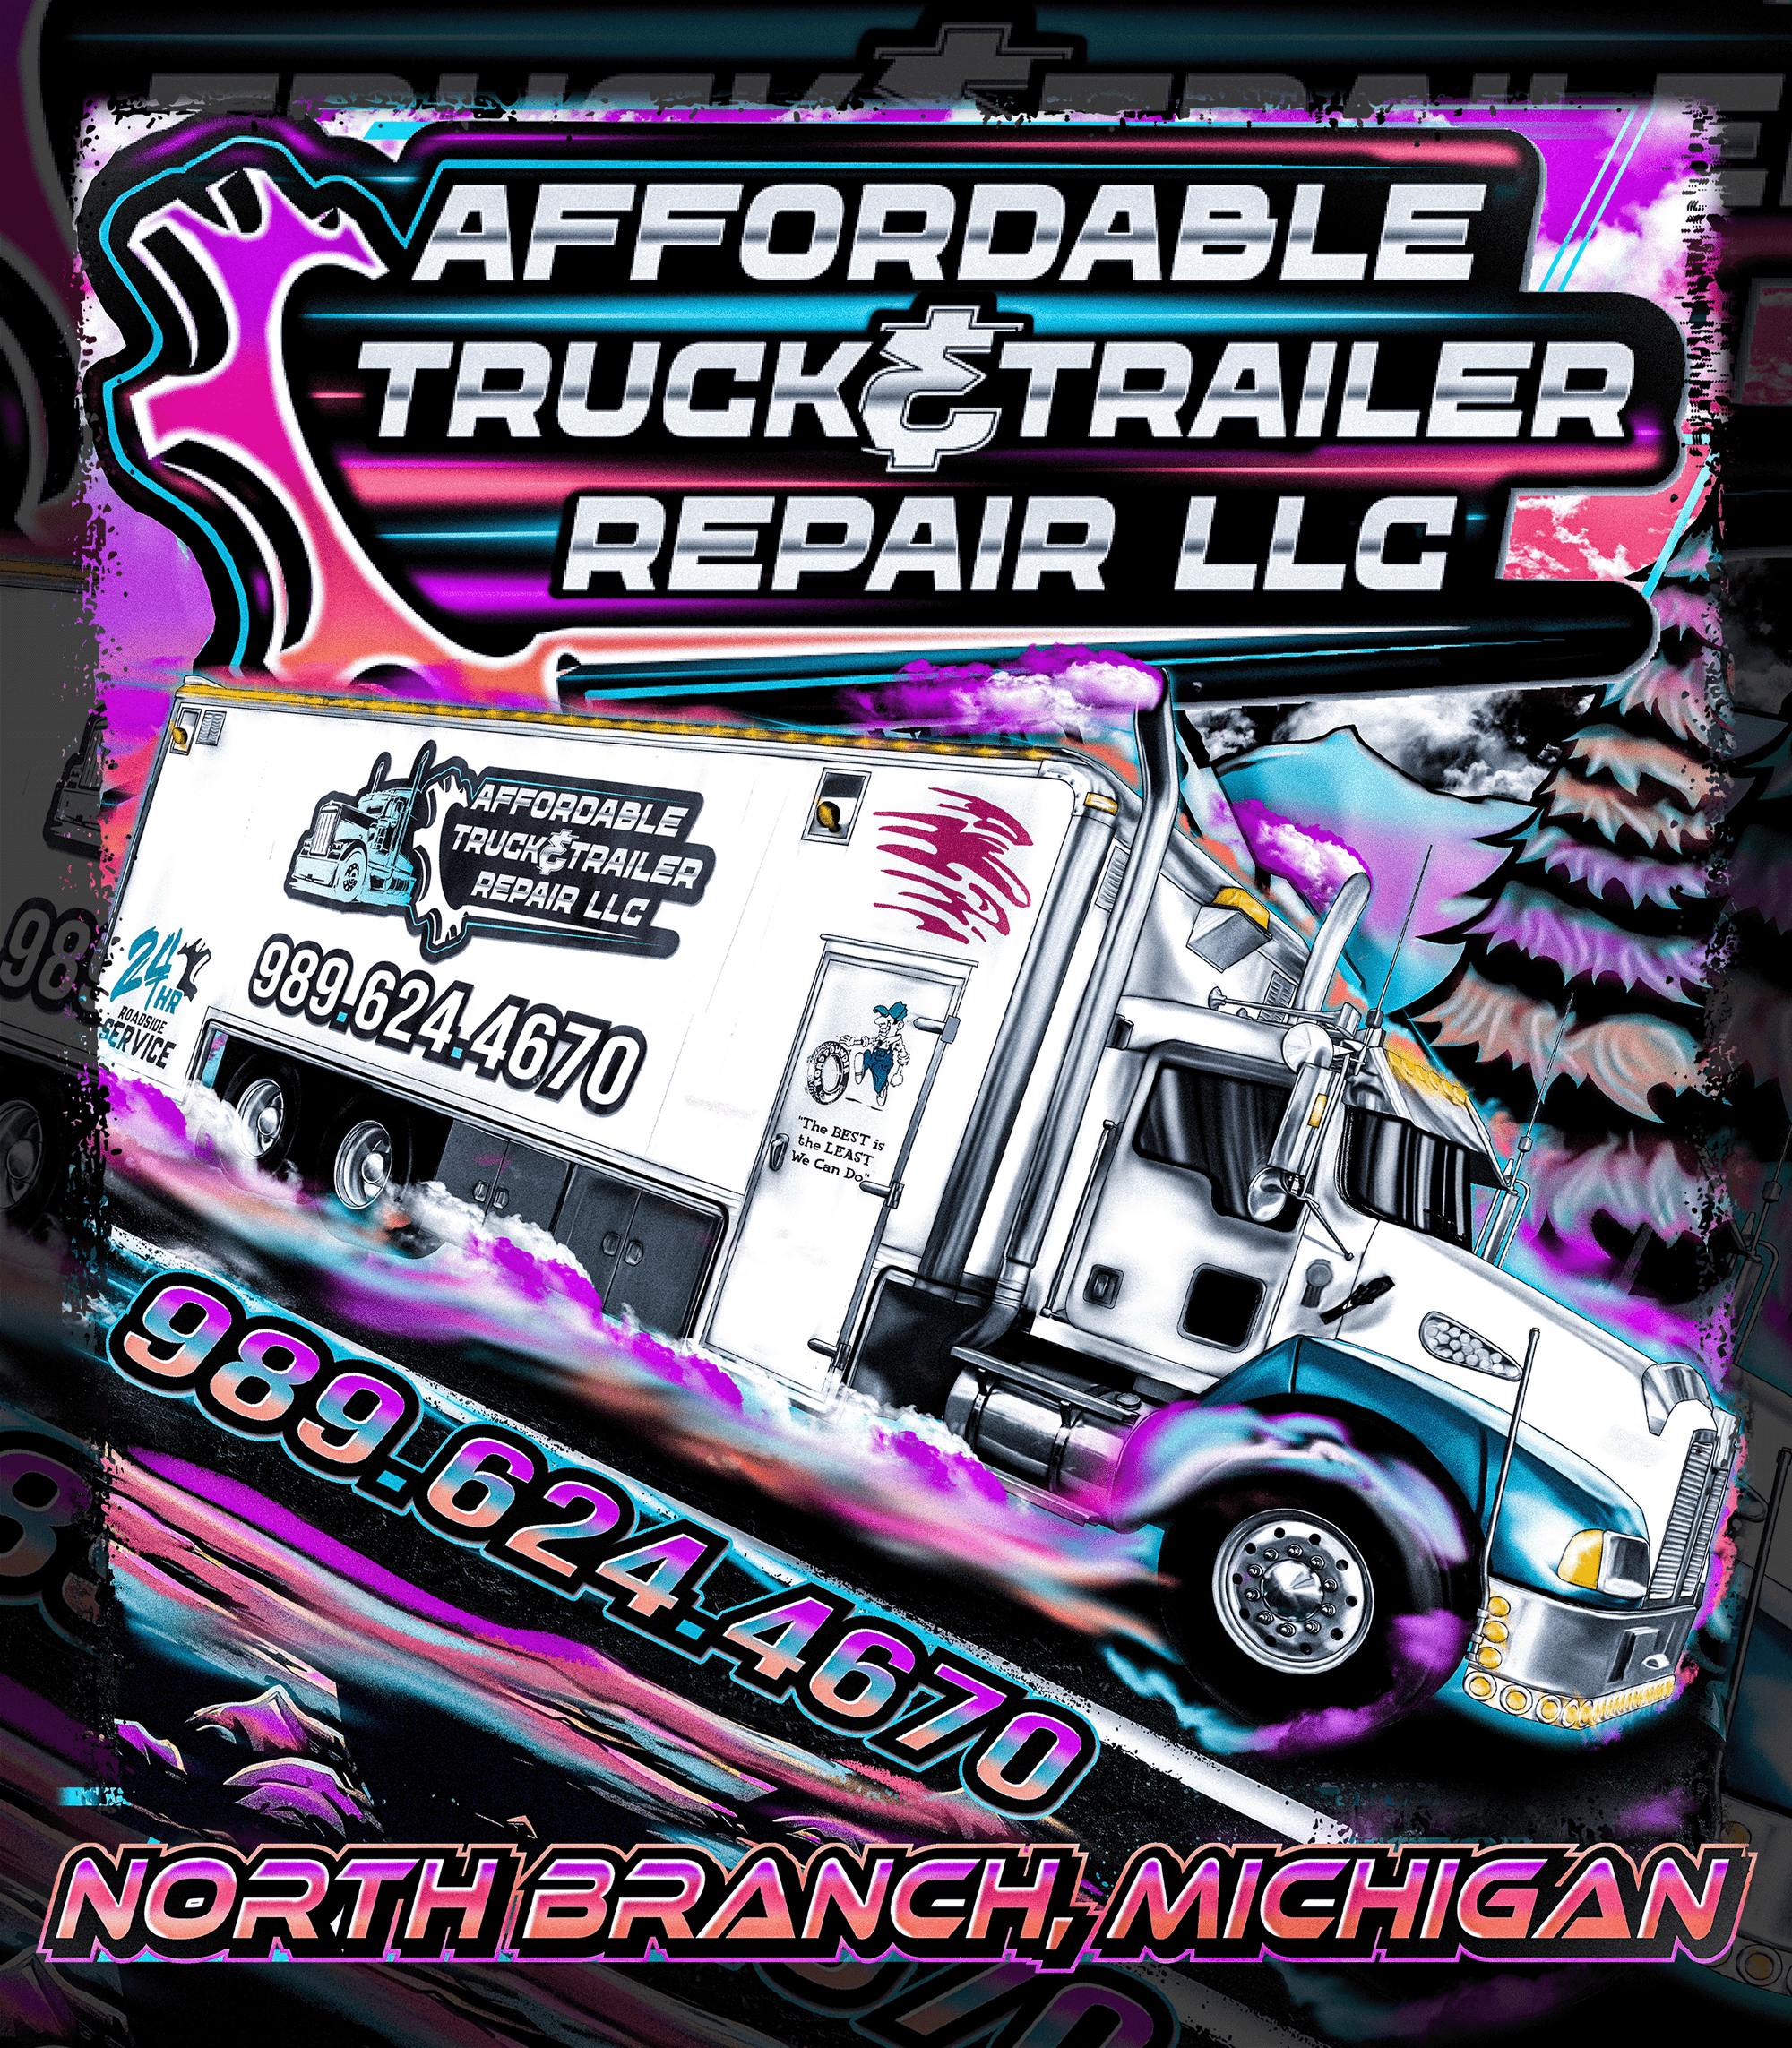 Affordable Truck & Trailer Repair